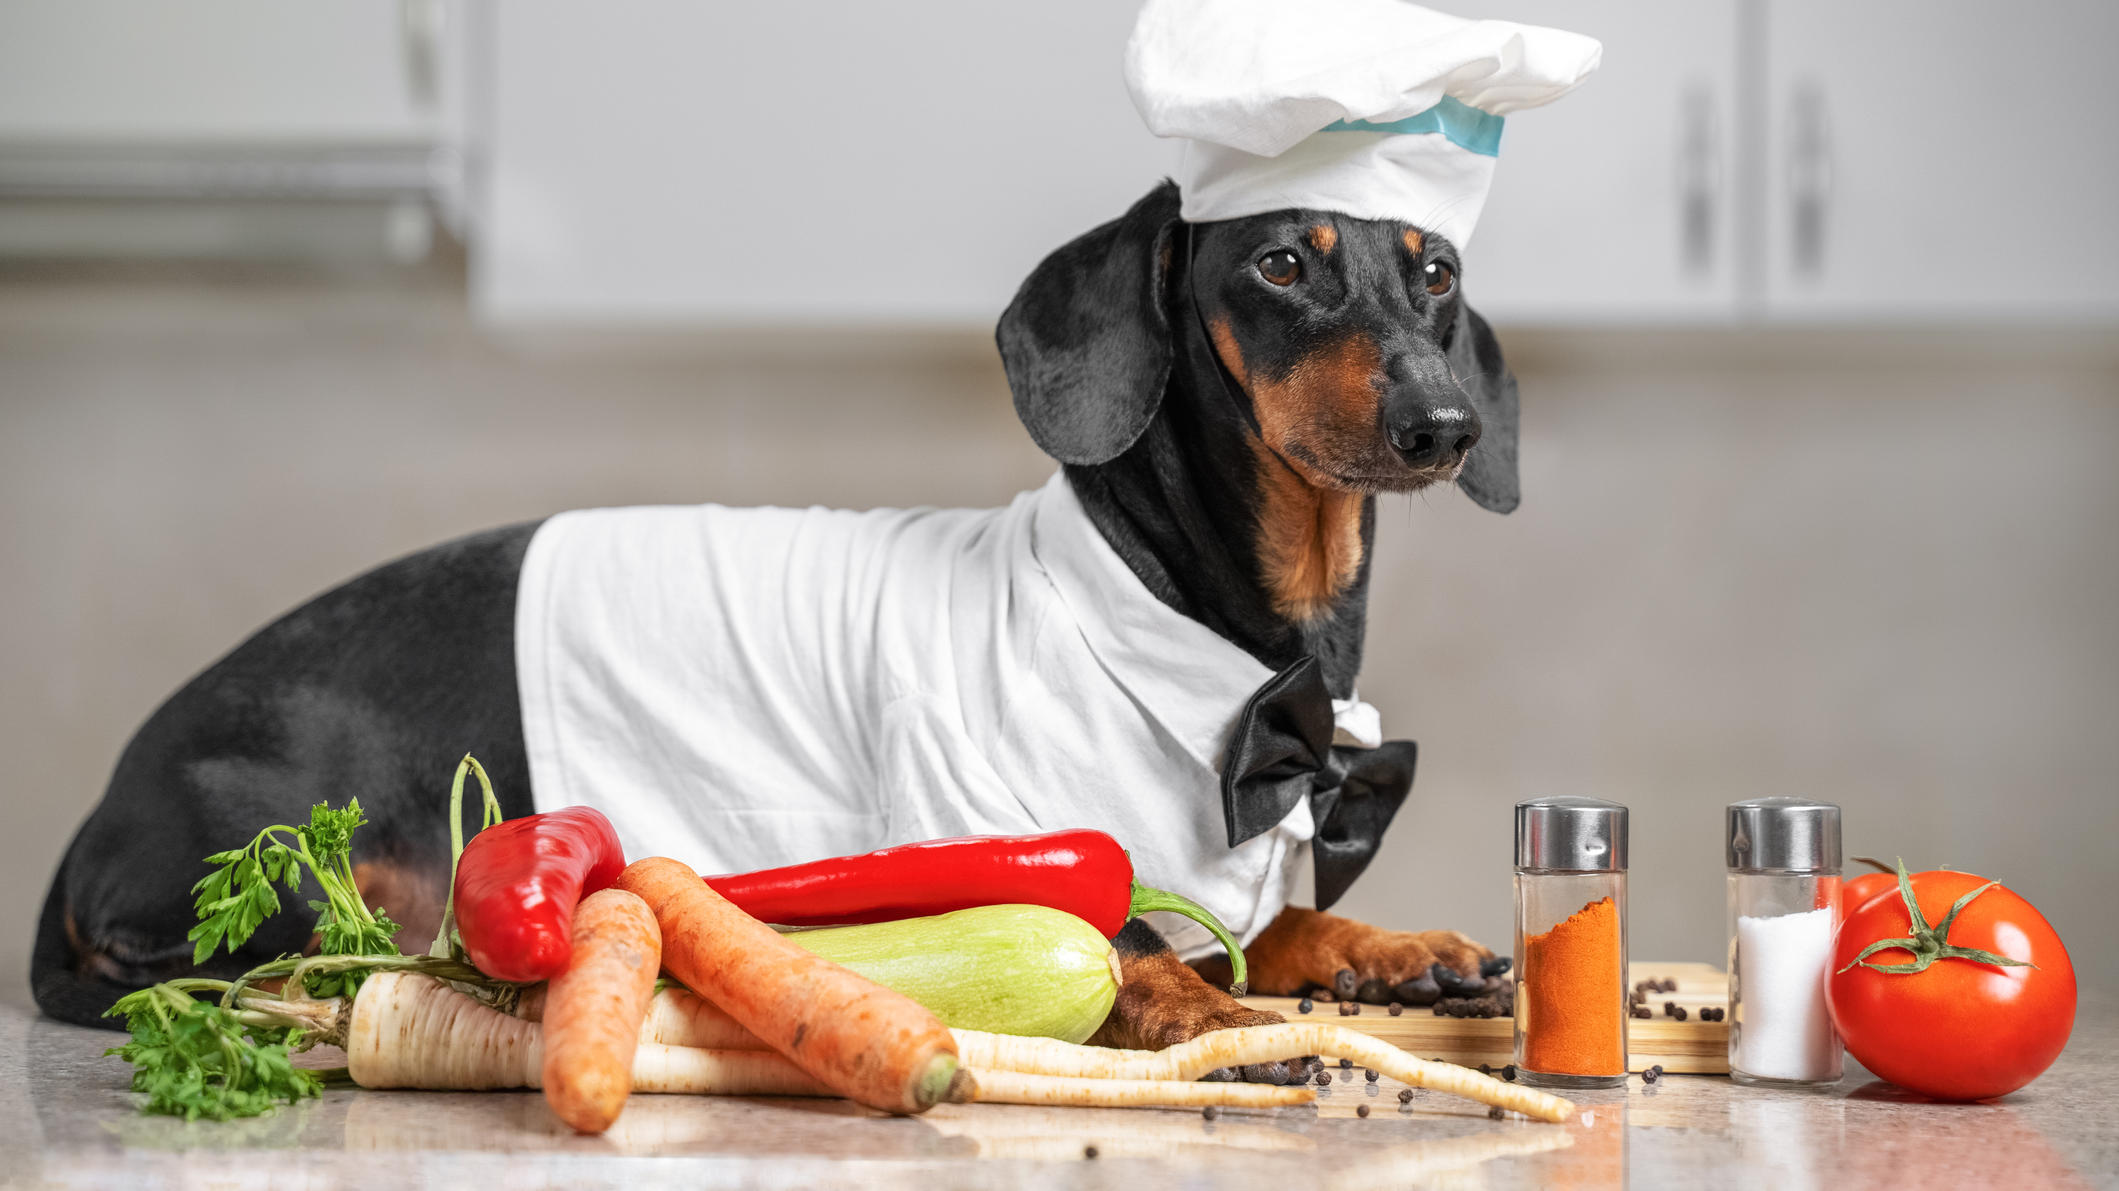 Hund in der Küche: Dackel als Koch verkleidet liegt neben Gemüse